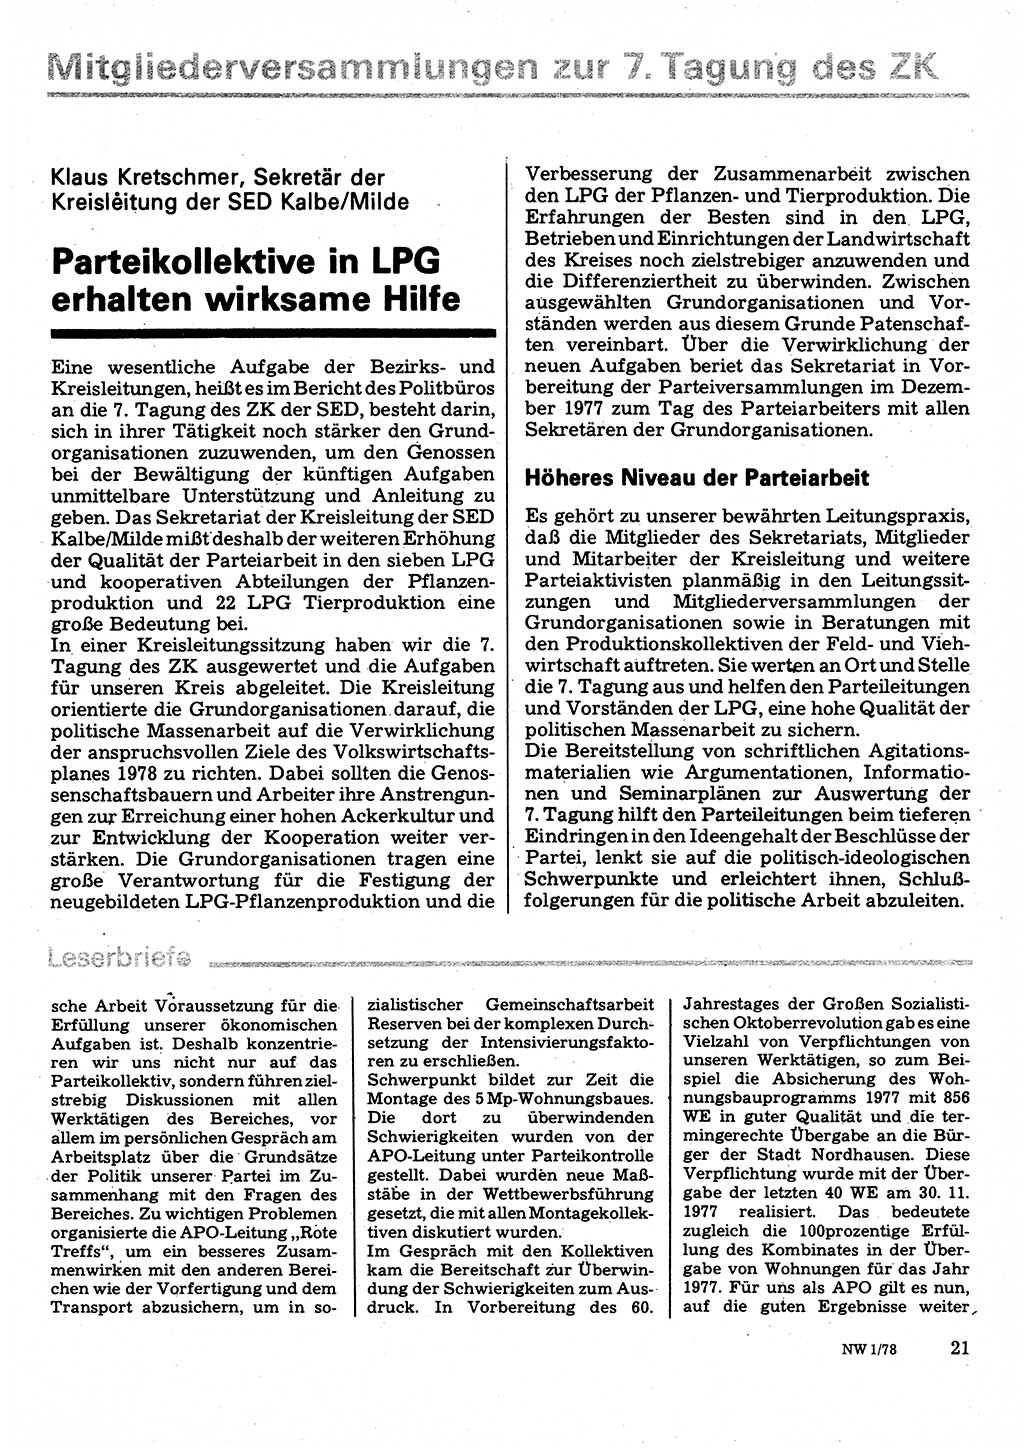 Neuer Weg (NW), Organ des Zentralkomitees (ZK) der SED (Sozialistische Einheitspartei Deutschlands) fÃ¼r Fragen des Parteilebens, 33. Jahrgang [Deutsche Demokratische Republik (DDR)] 1978, Seite 21 (NW ZK SED DDR 1978, S. 21)